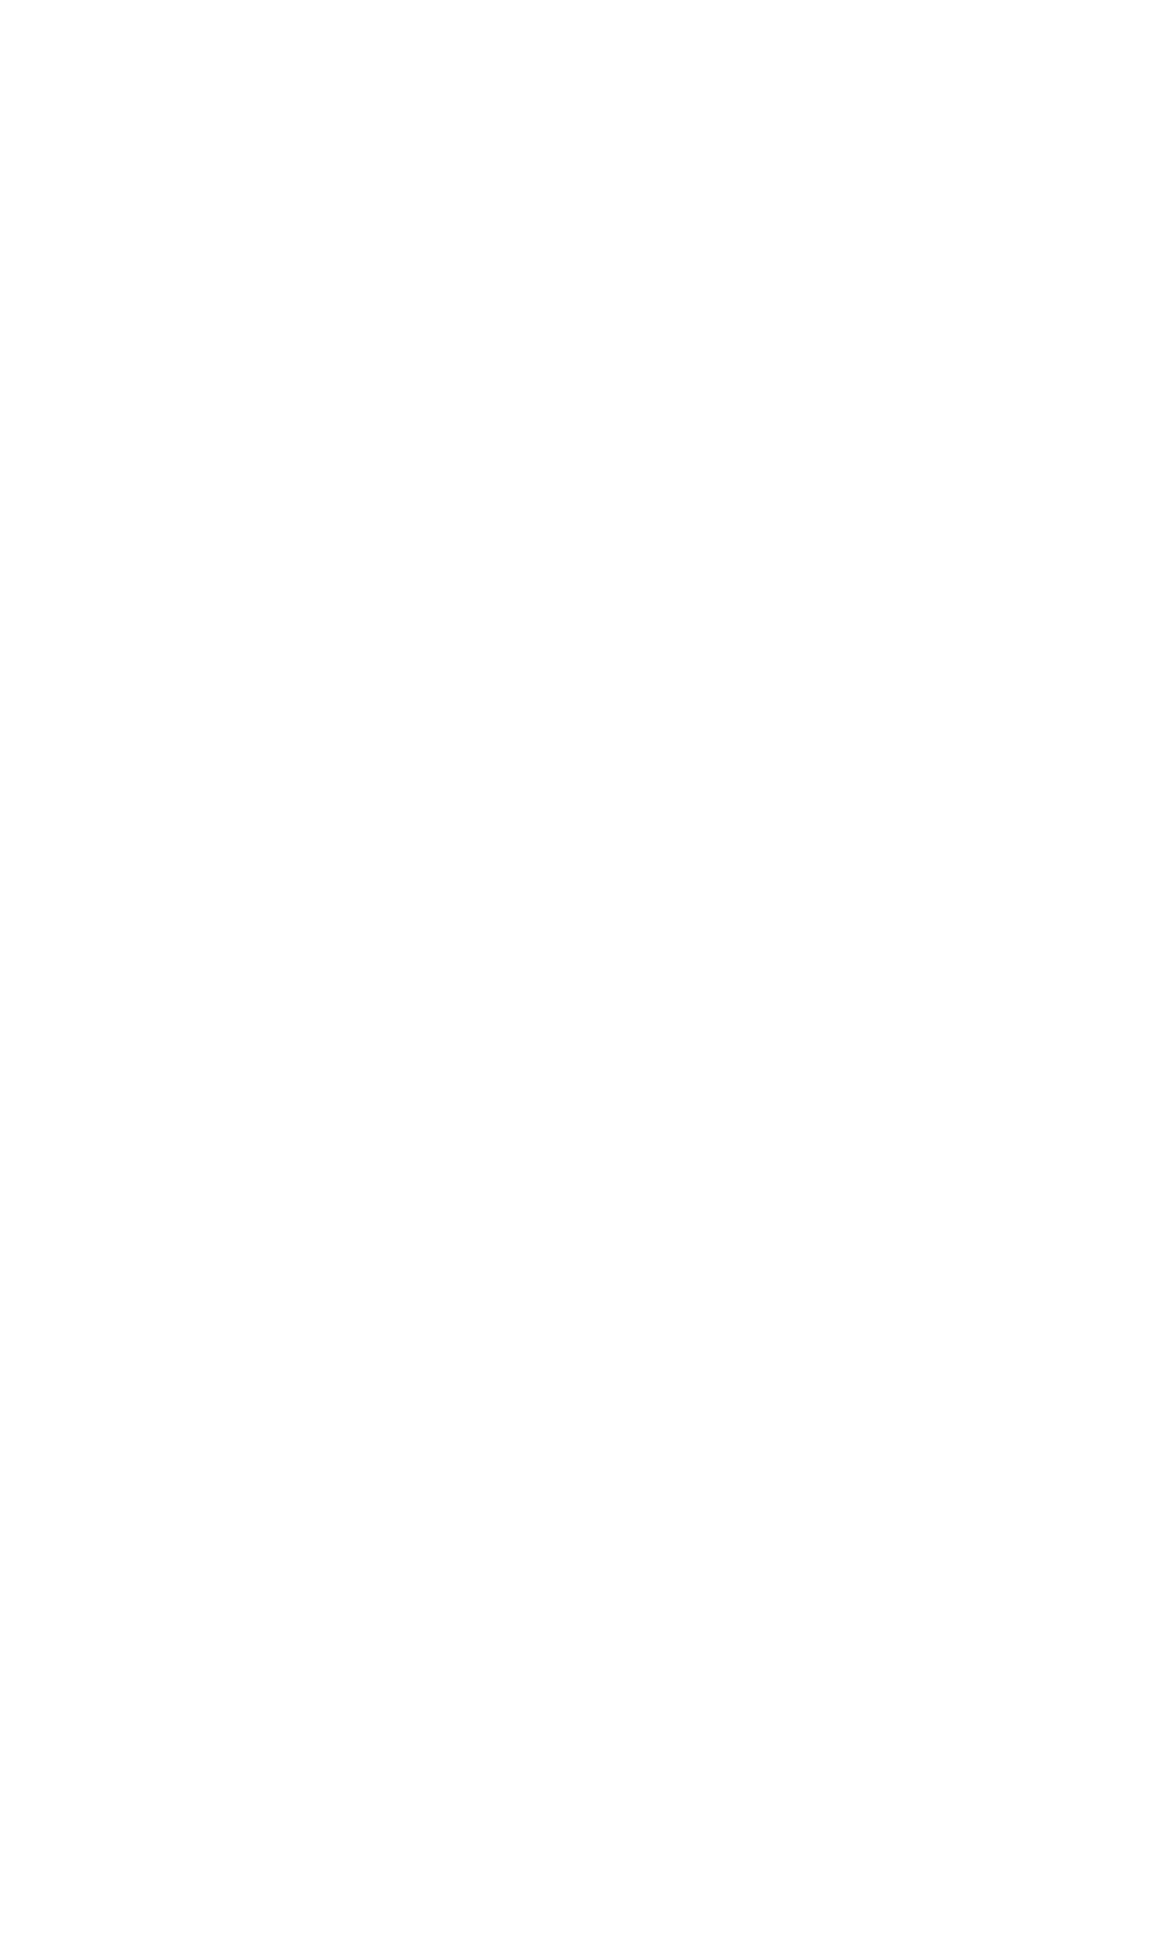 Mobile Dev Memo - Graphic Design (1170x1957)